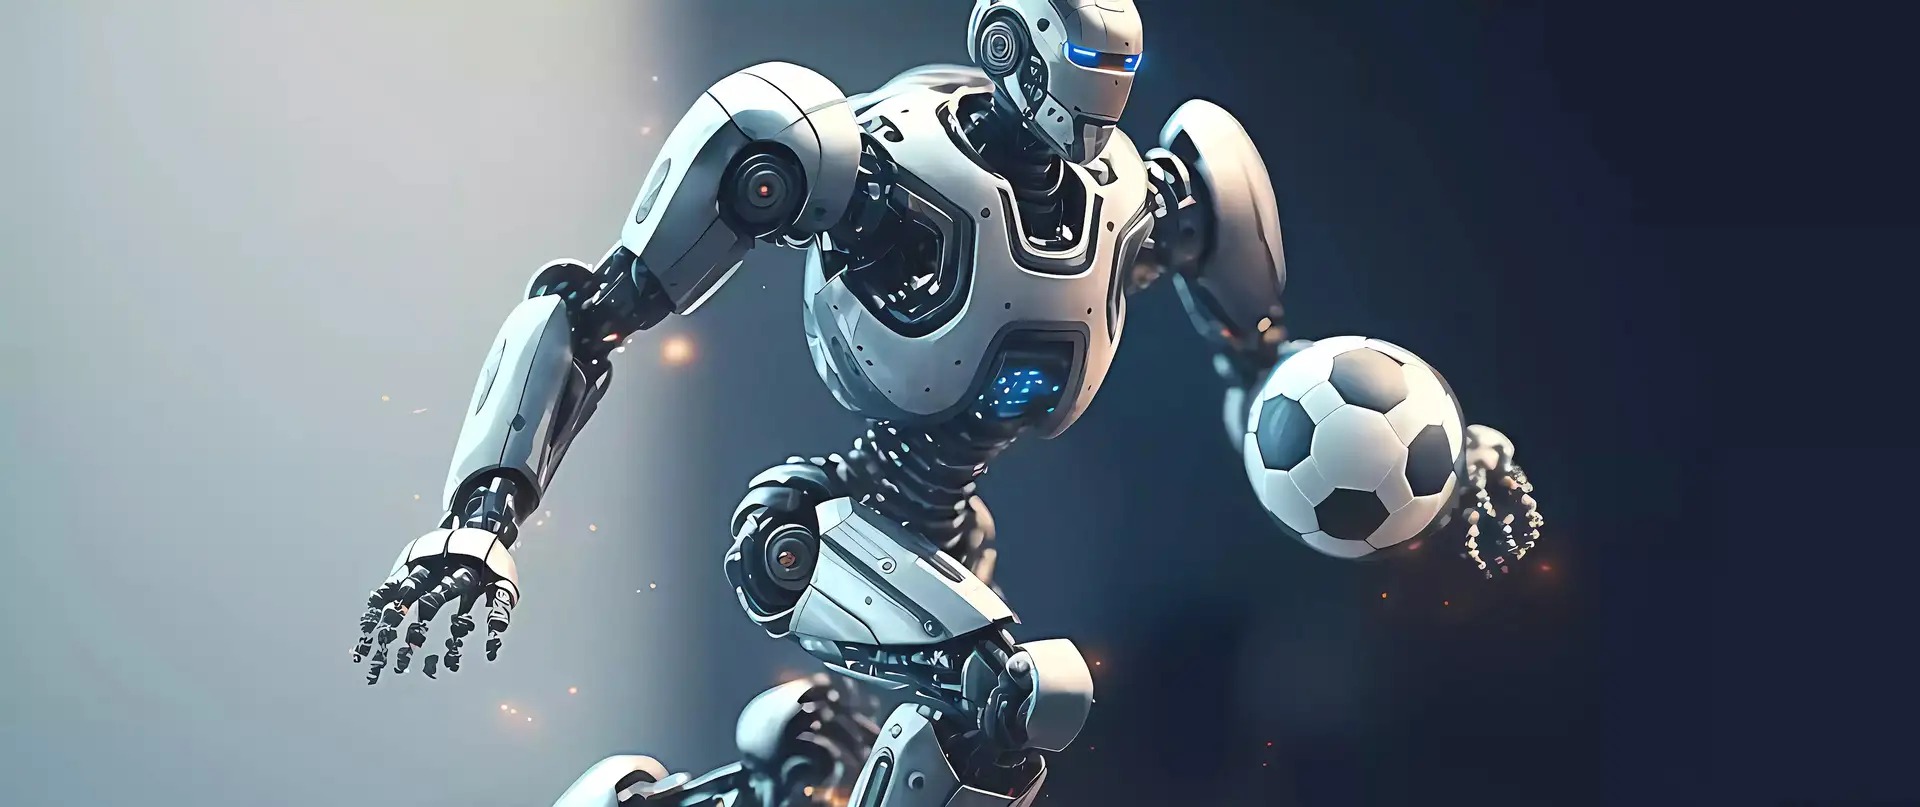 robot football - Diese Humanoid-Roboter liefern beim Fußball Höchstleistungen ab: Sie dribbeln und schießen wie ein Mensch!